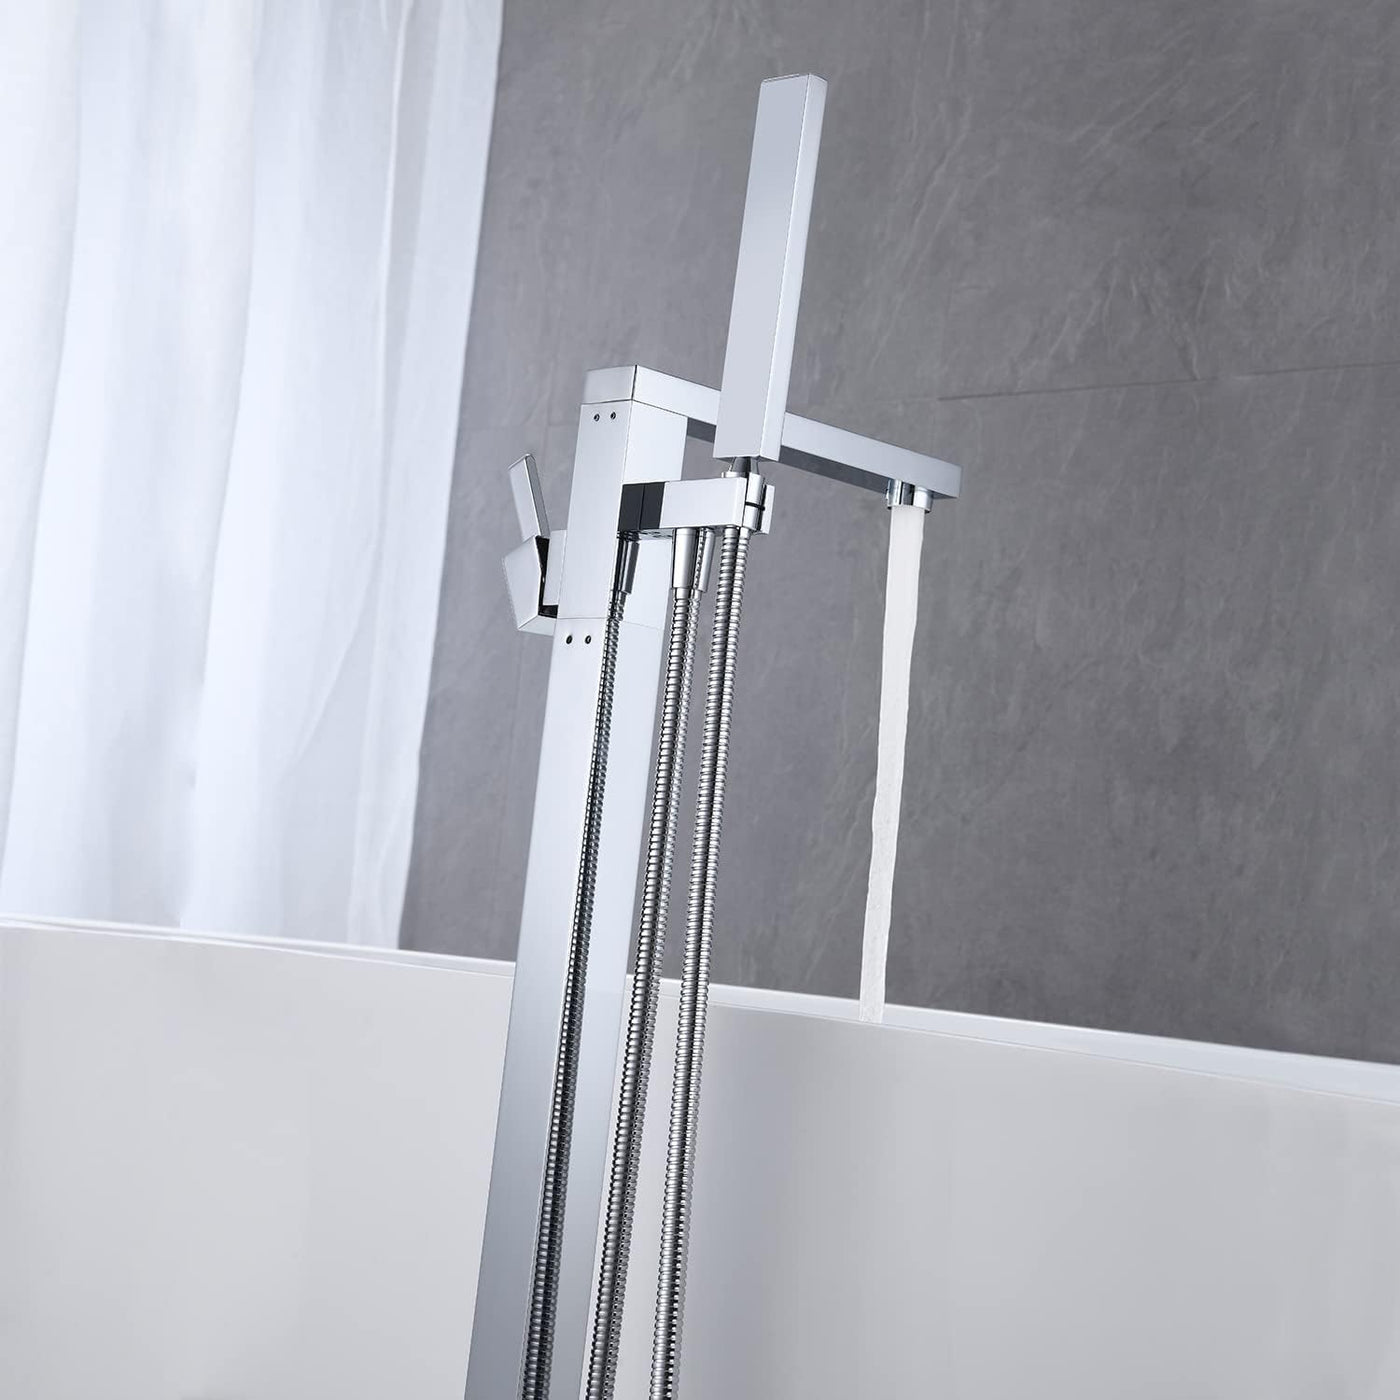 Wowkk Freestanding Bathtub Faucet Tub Filler Chrome Floor Mount - $175